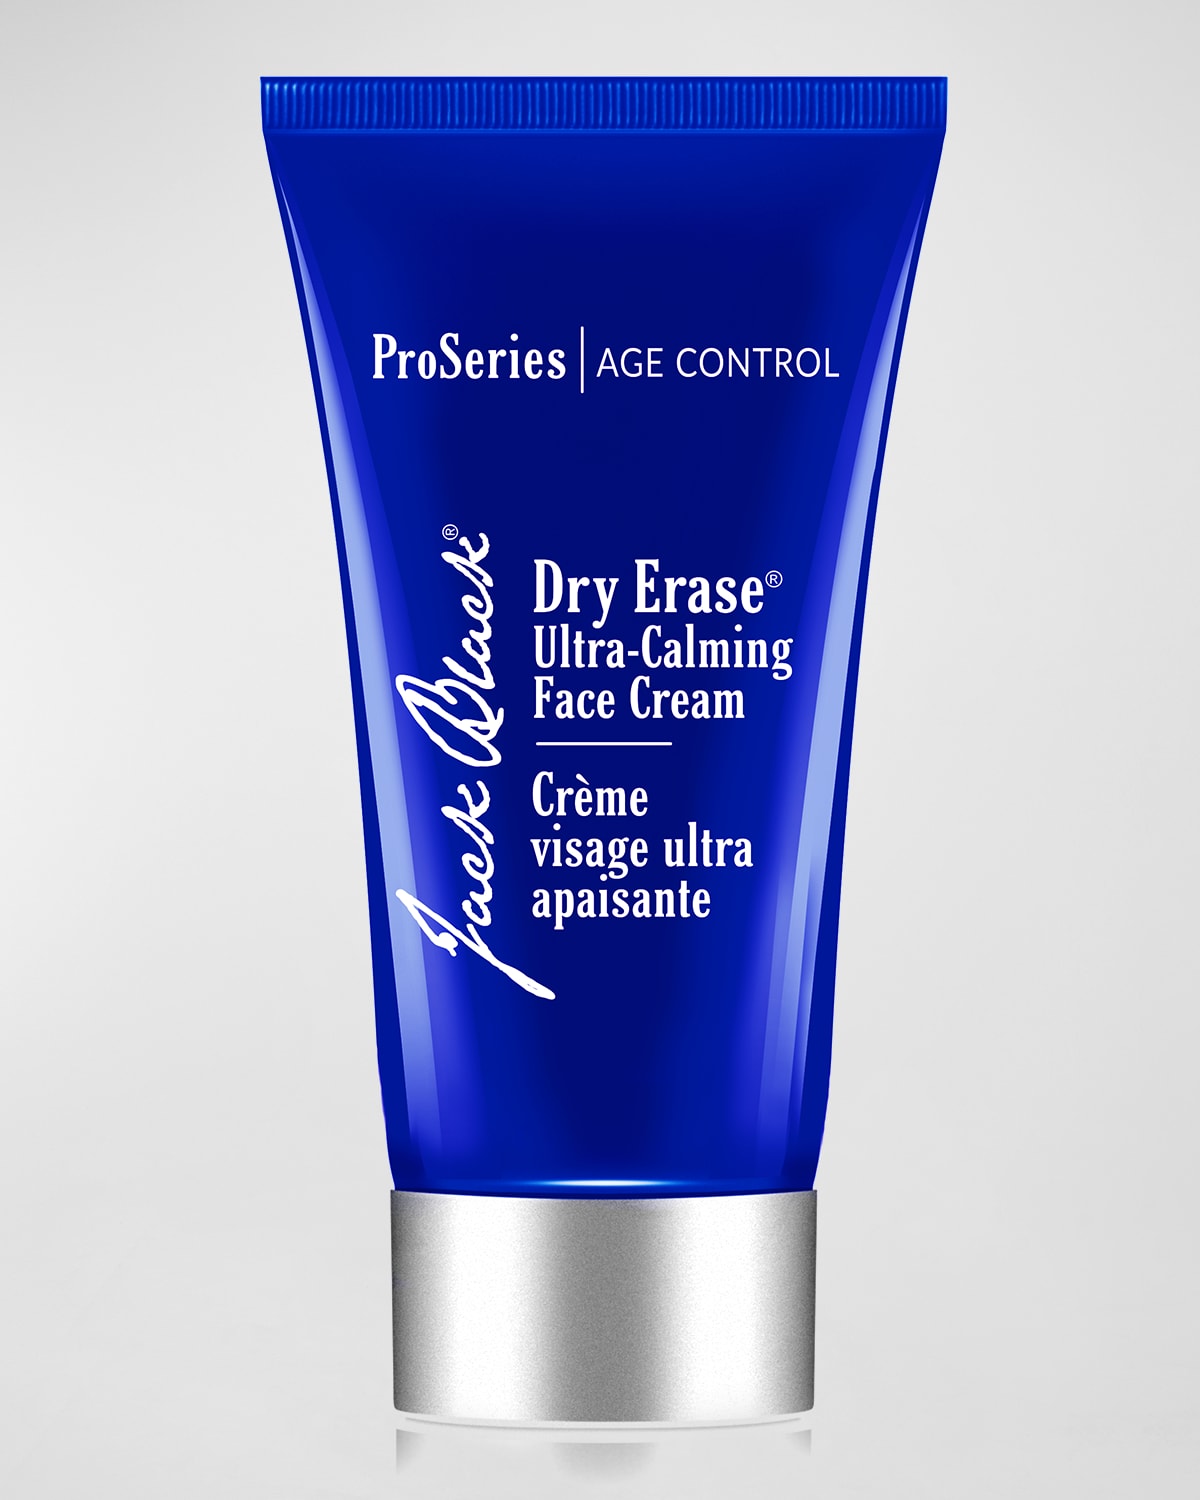 Dry Erase&#153; Ultra-Calming Face Cream, 2.5 oz.